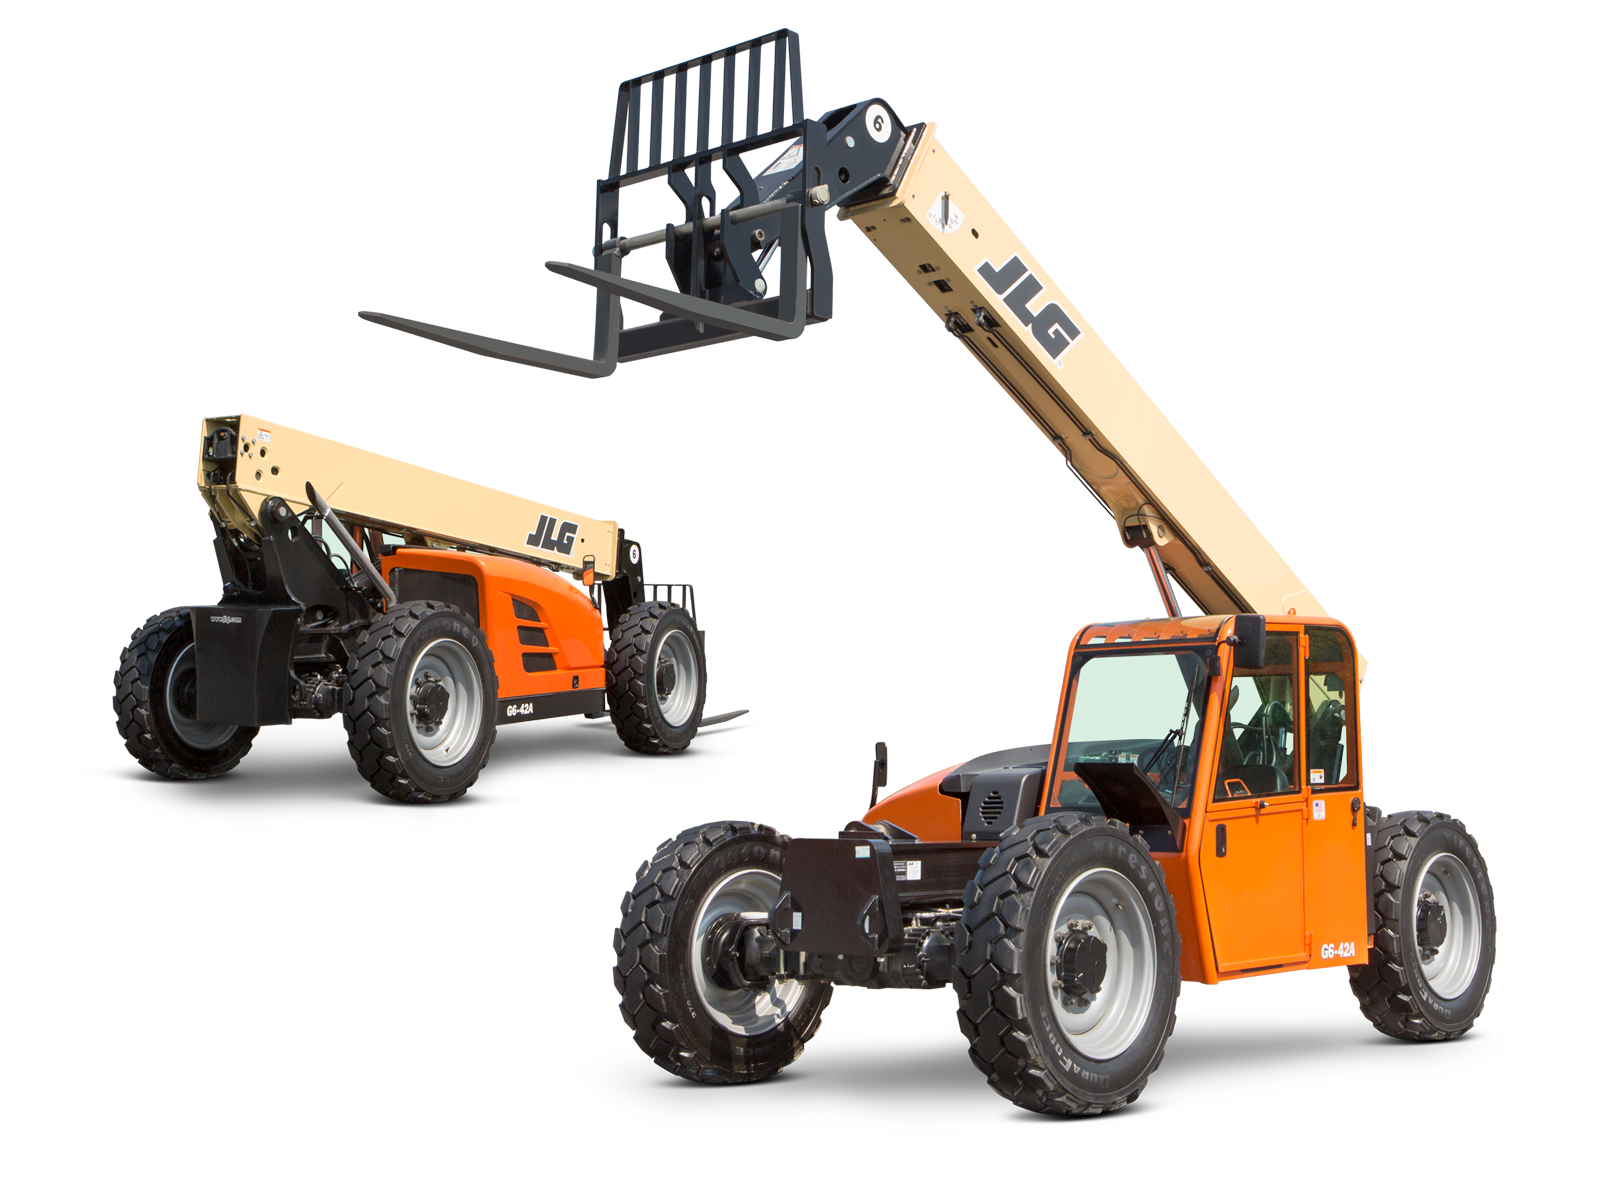 42 ft Forklift Telehandler 6,000 lb